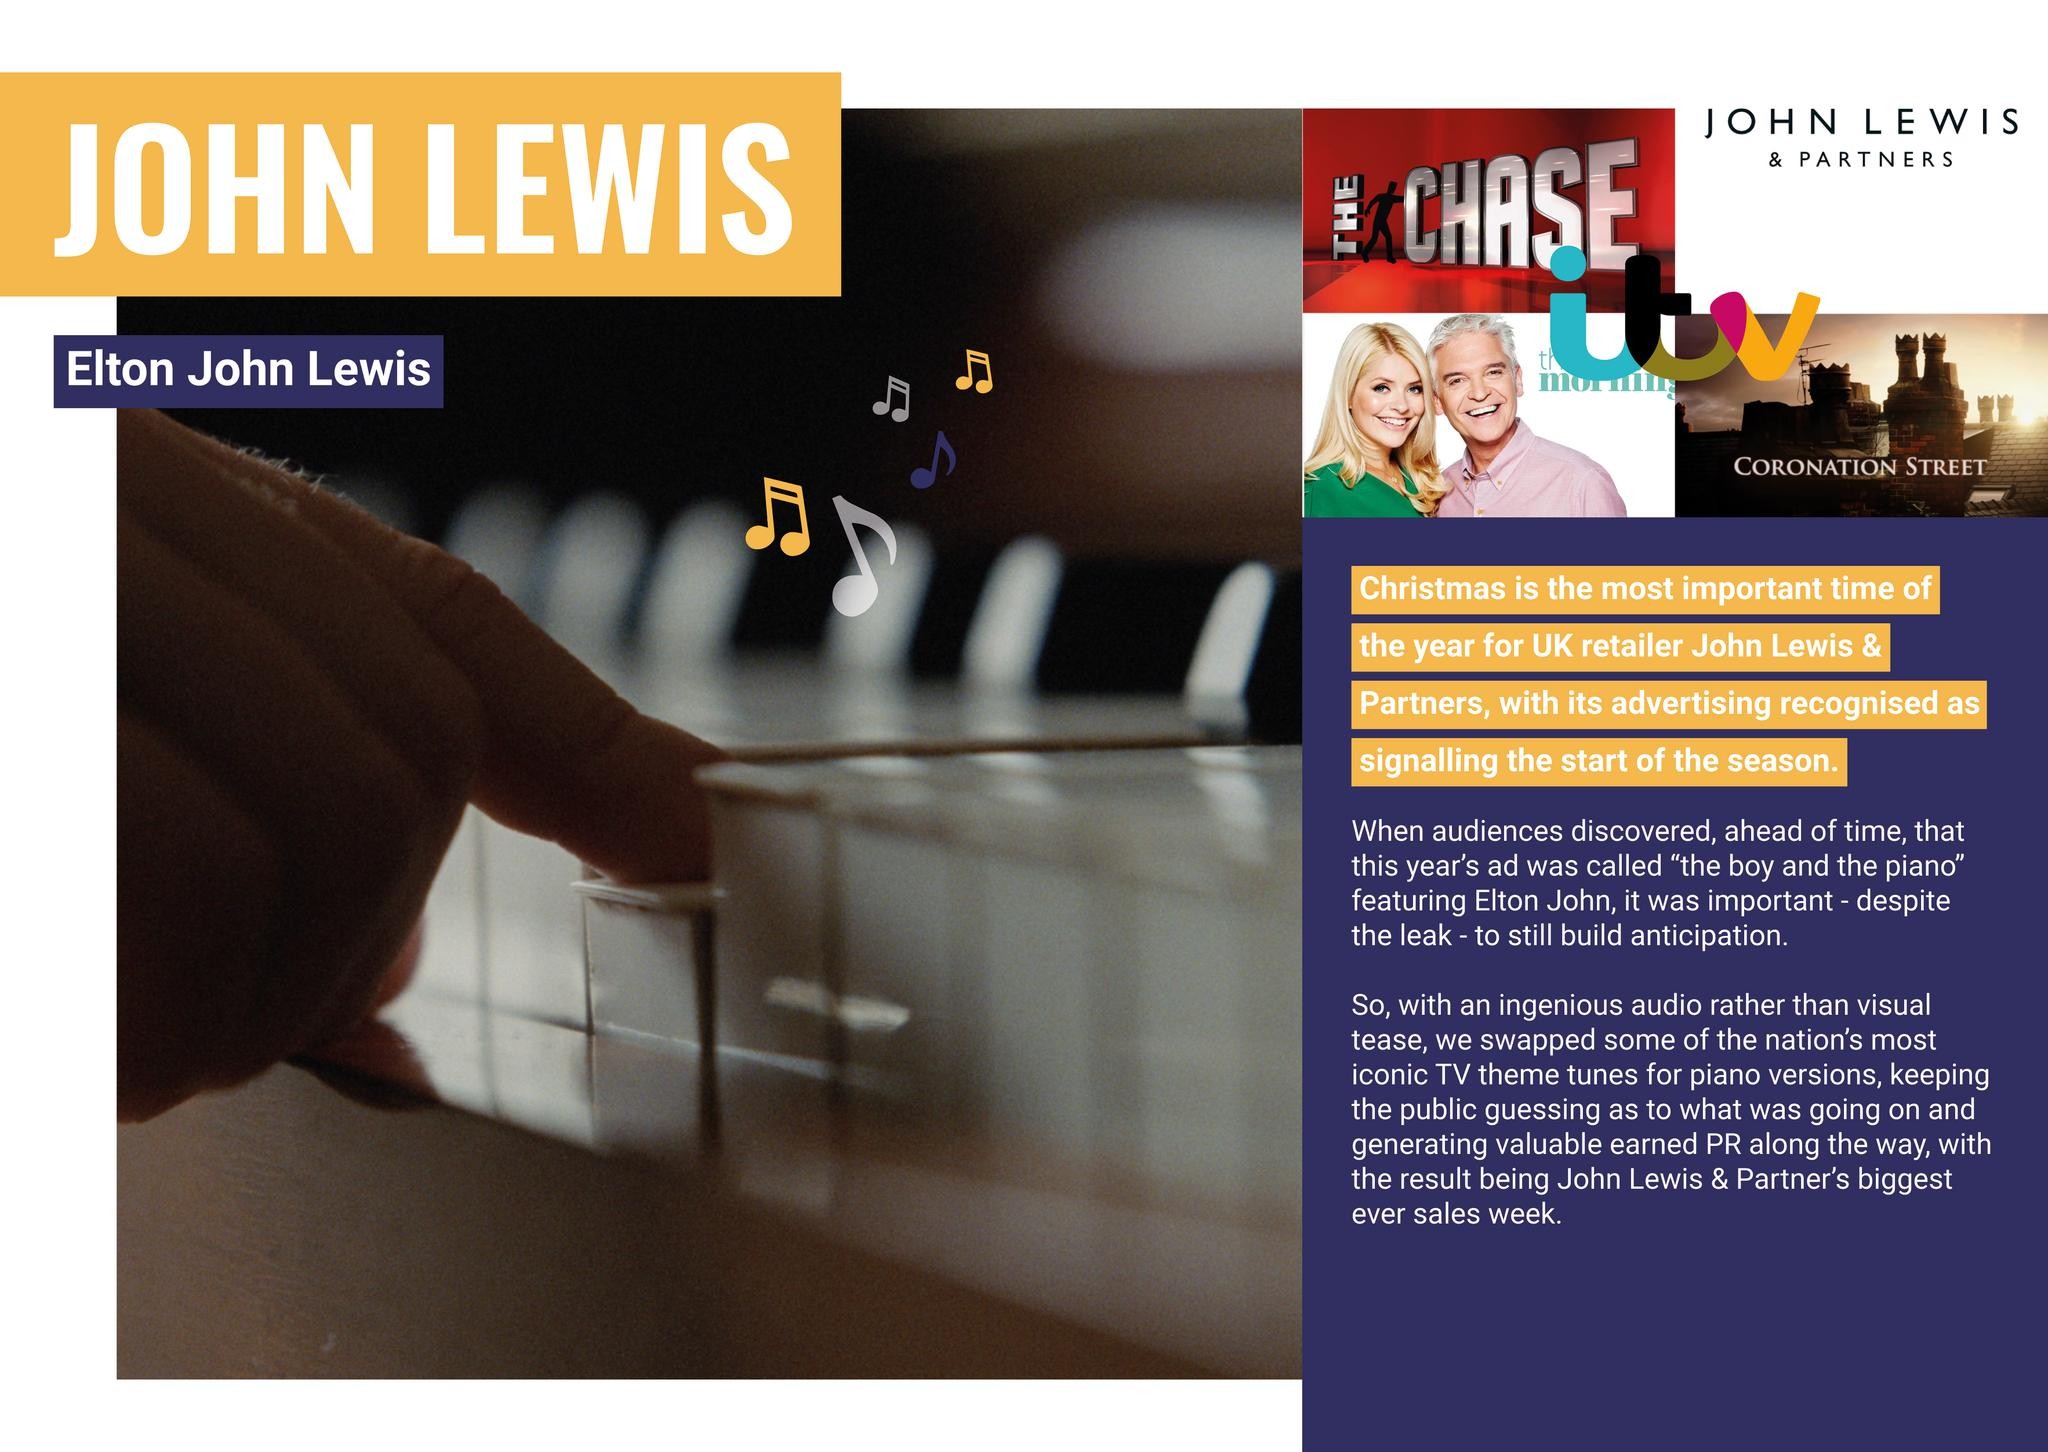 John Lewis & Partners - Elton John Lewis